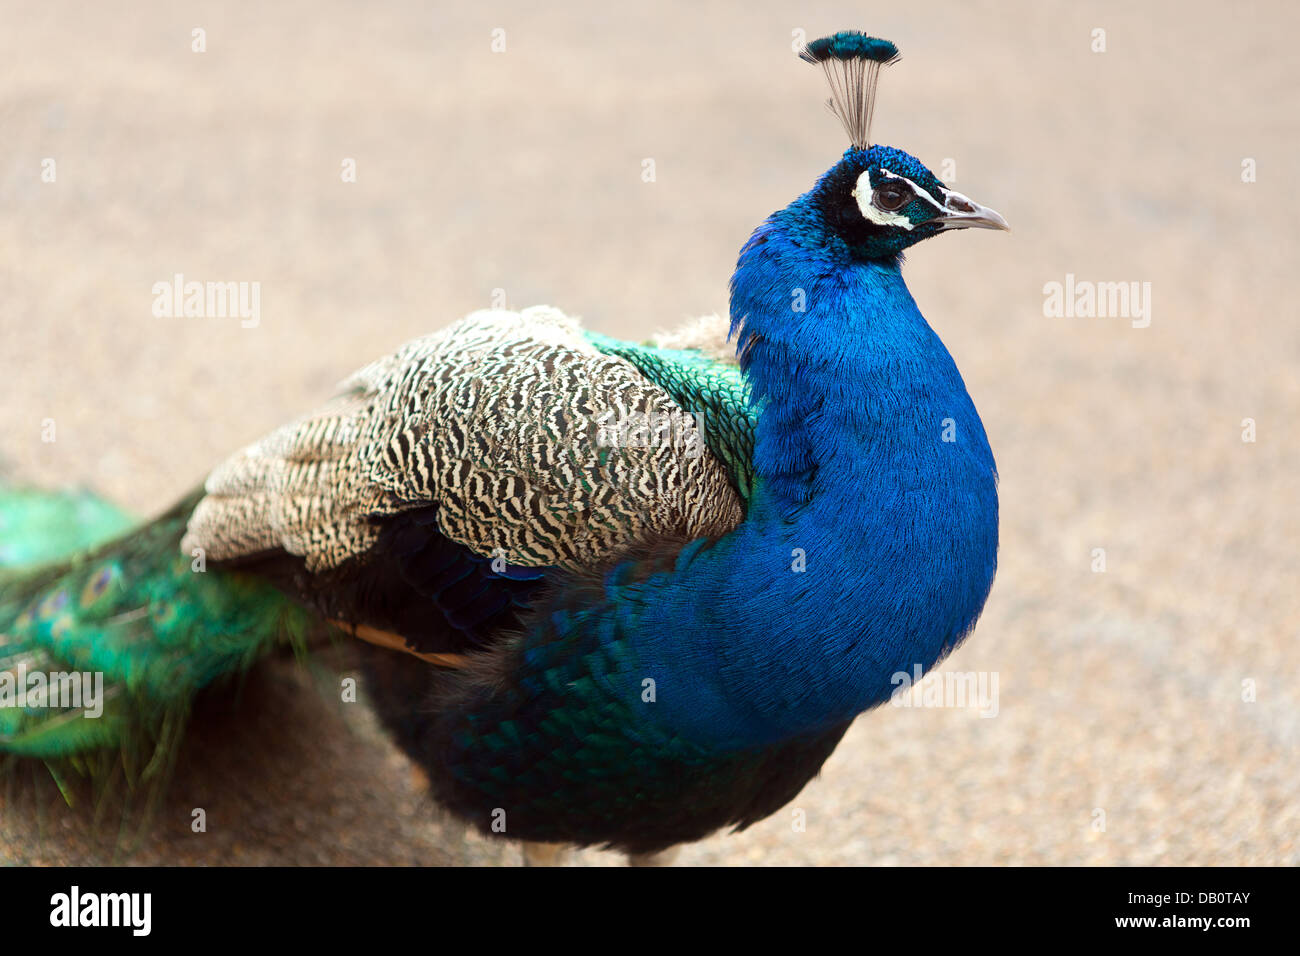 Peacock, (un maschio Peafowl). Foto Stock